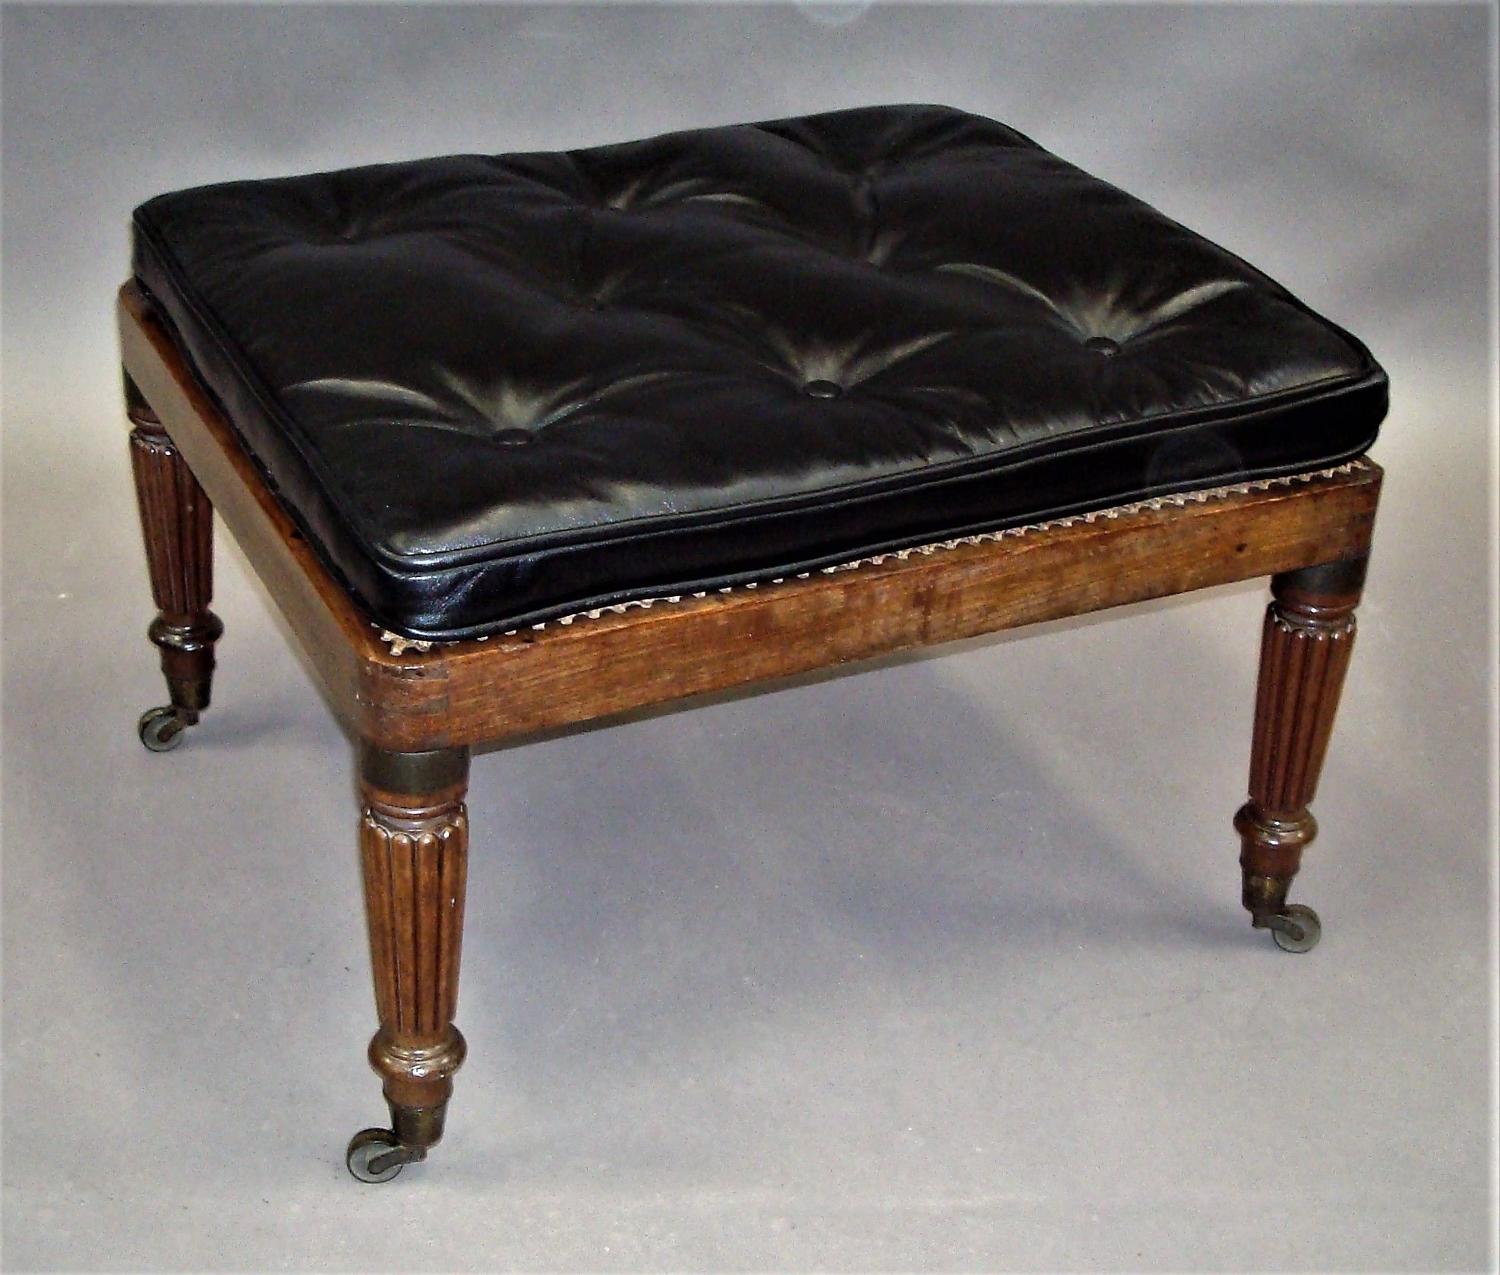 Regency mahogany campaign stool